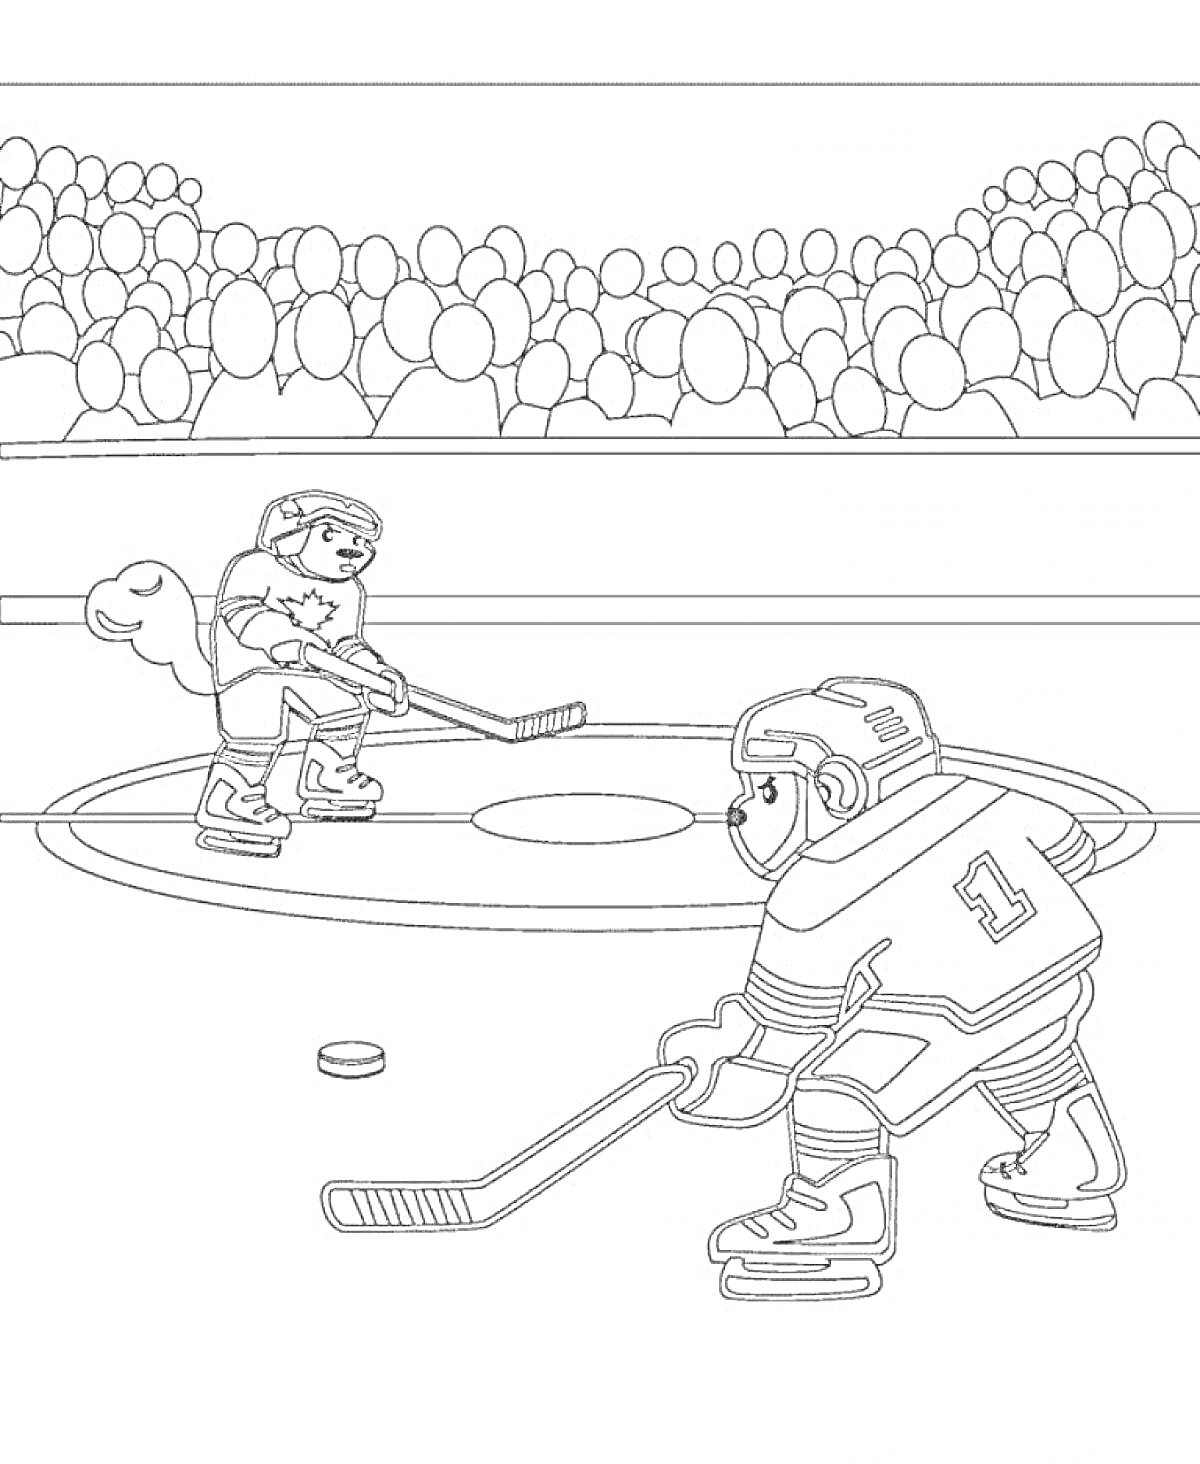 Два хоккеиста на льду, играющие во время матча, стадион с зрителями на заднем плане